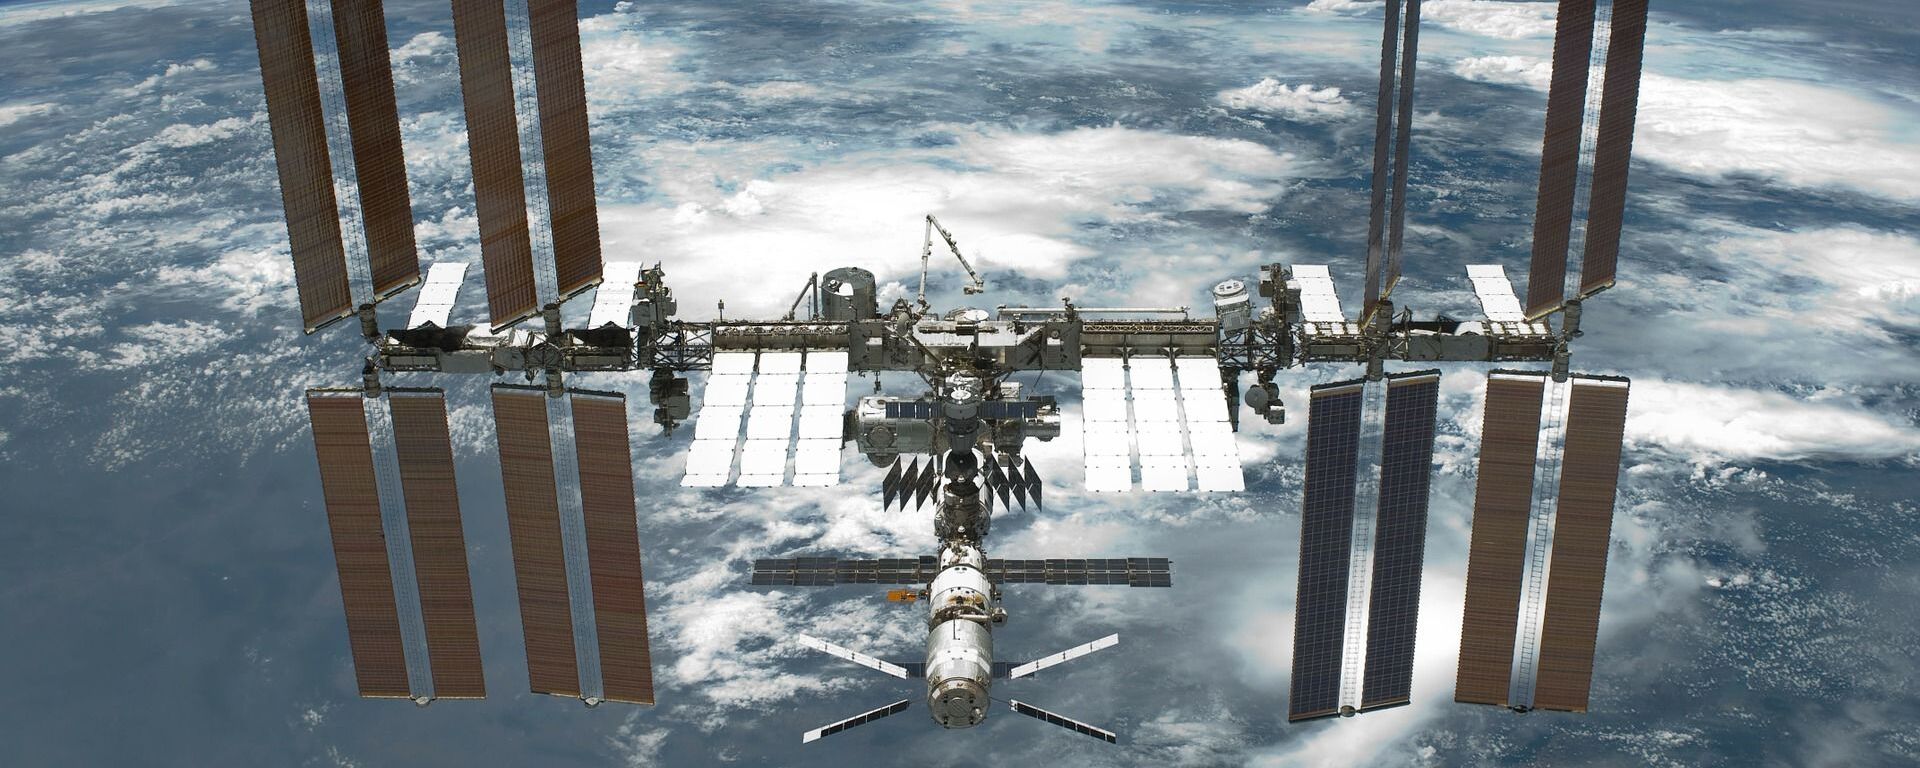 La Estación Espacial Internacional - Sputnik Mundo, 1920, 18.11.2020